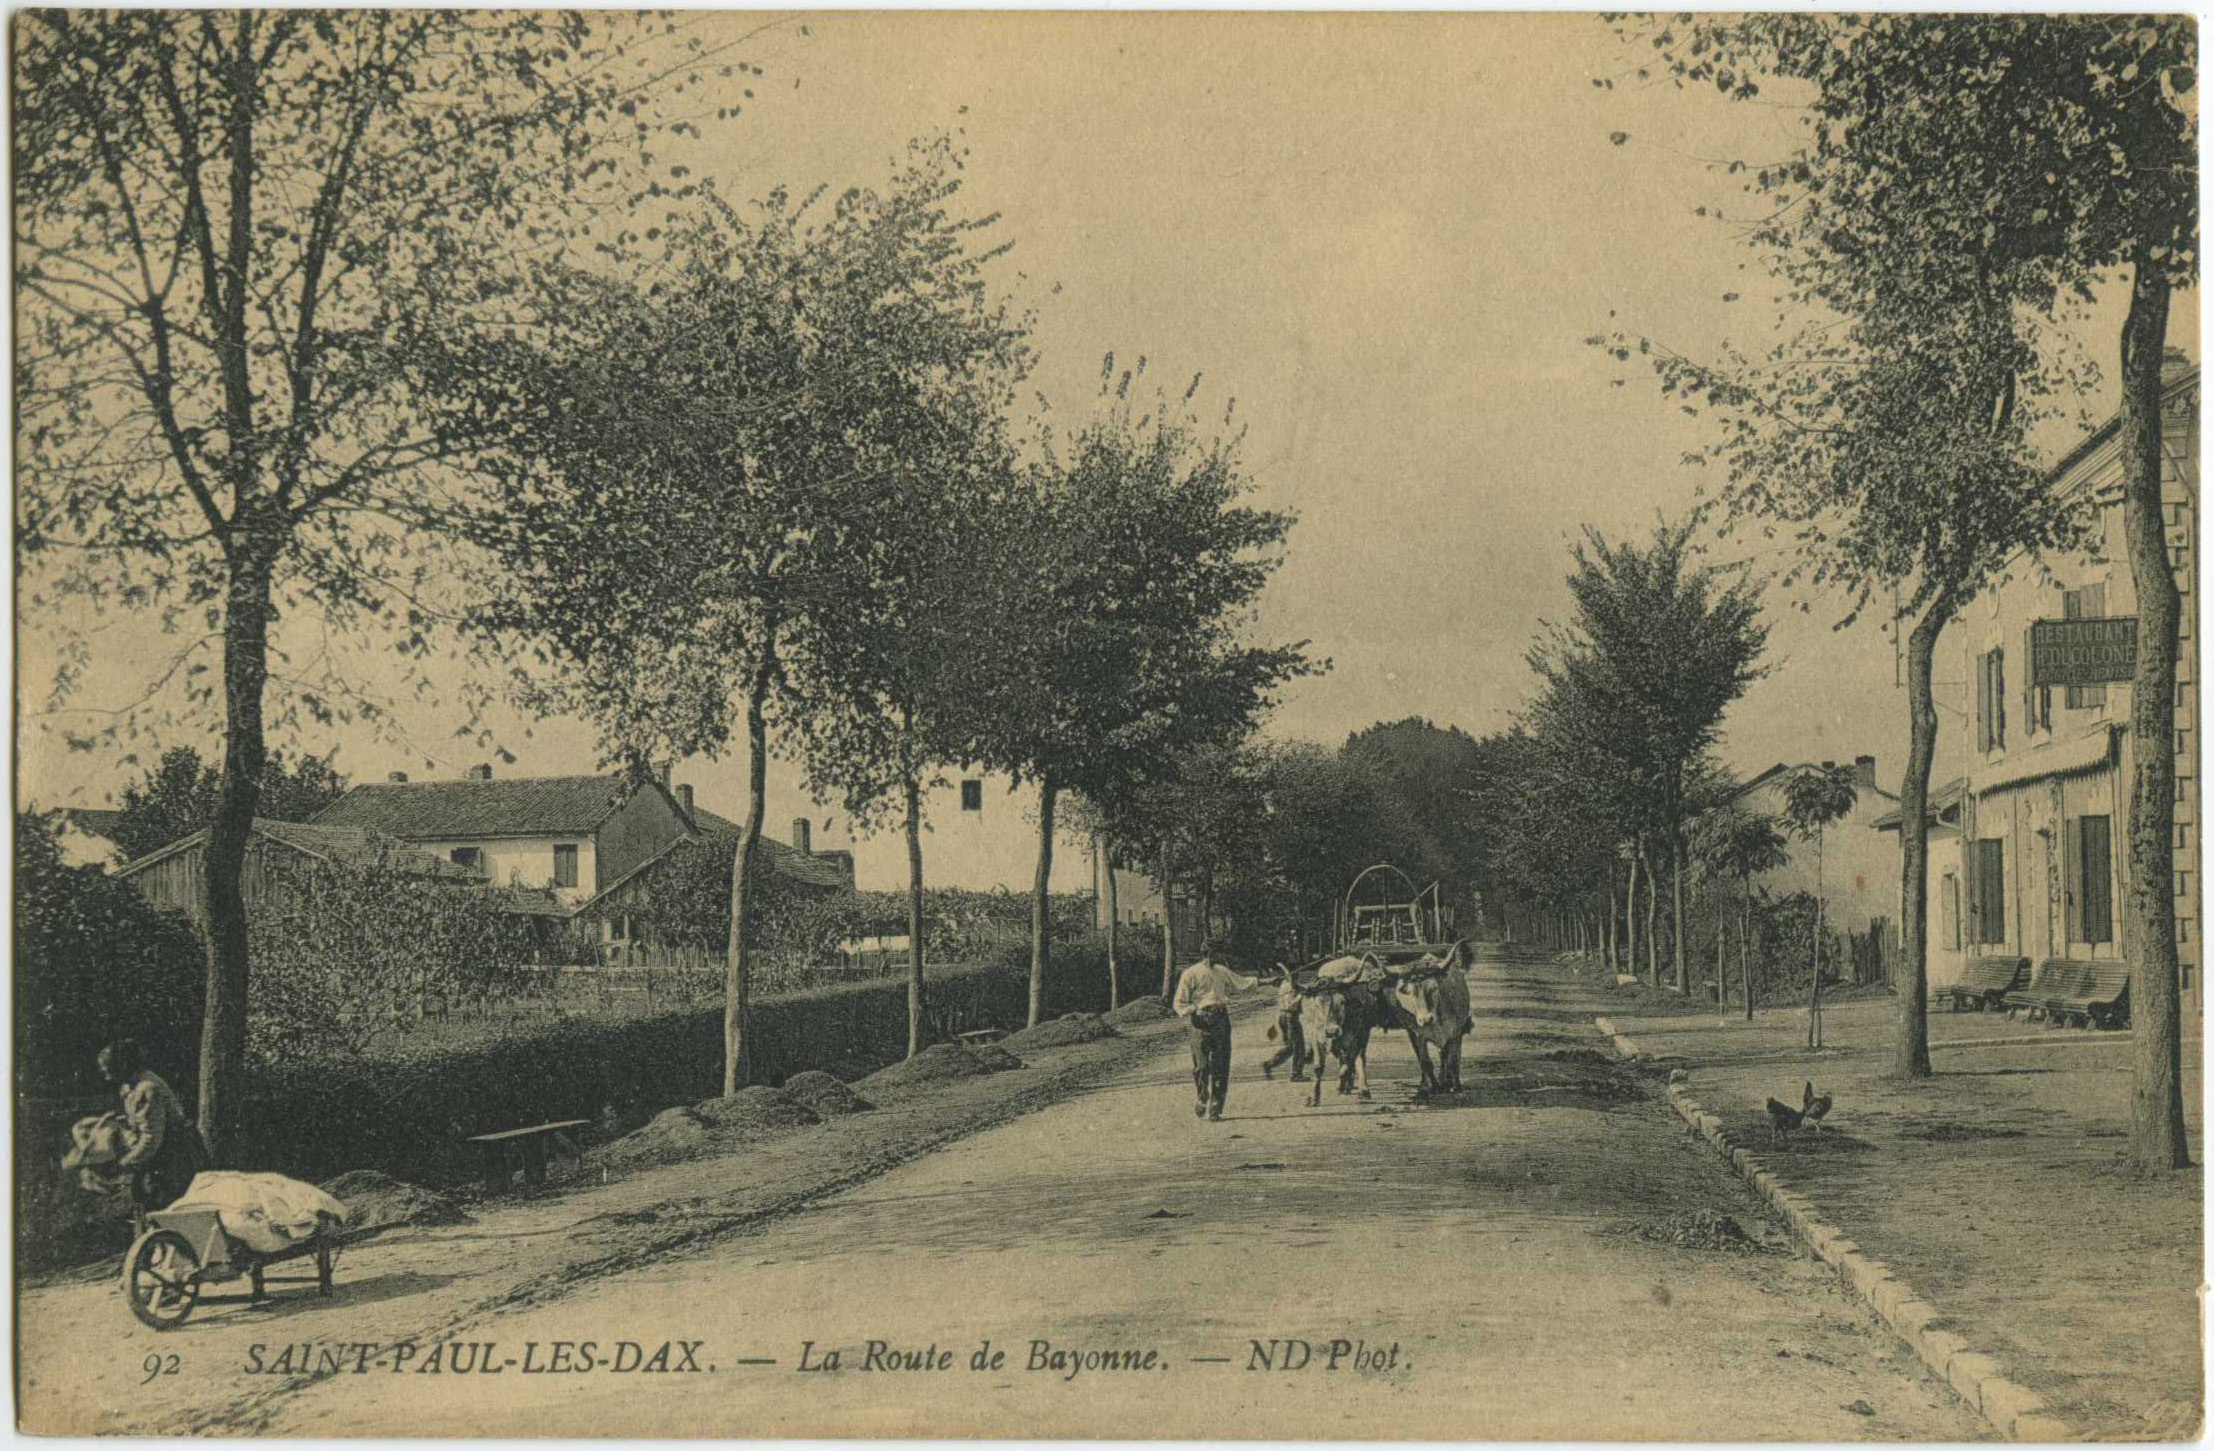 Saint-Paul-lès-Dax - La Route de Bayonne